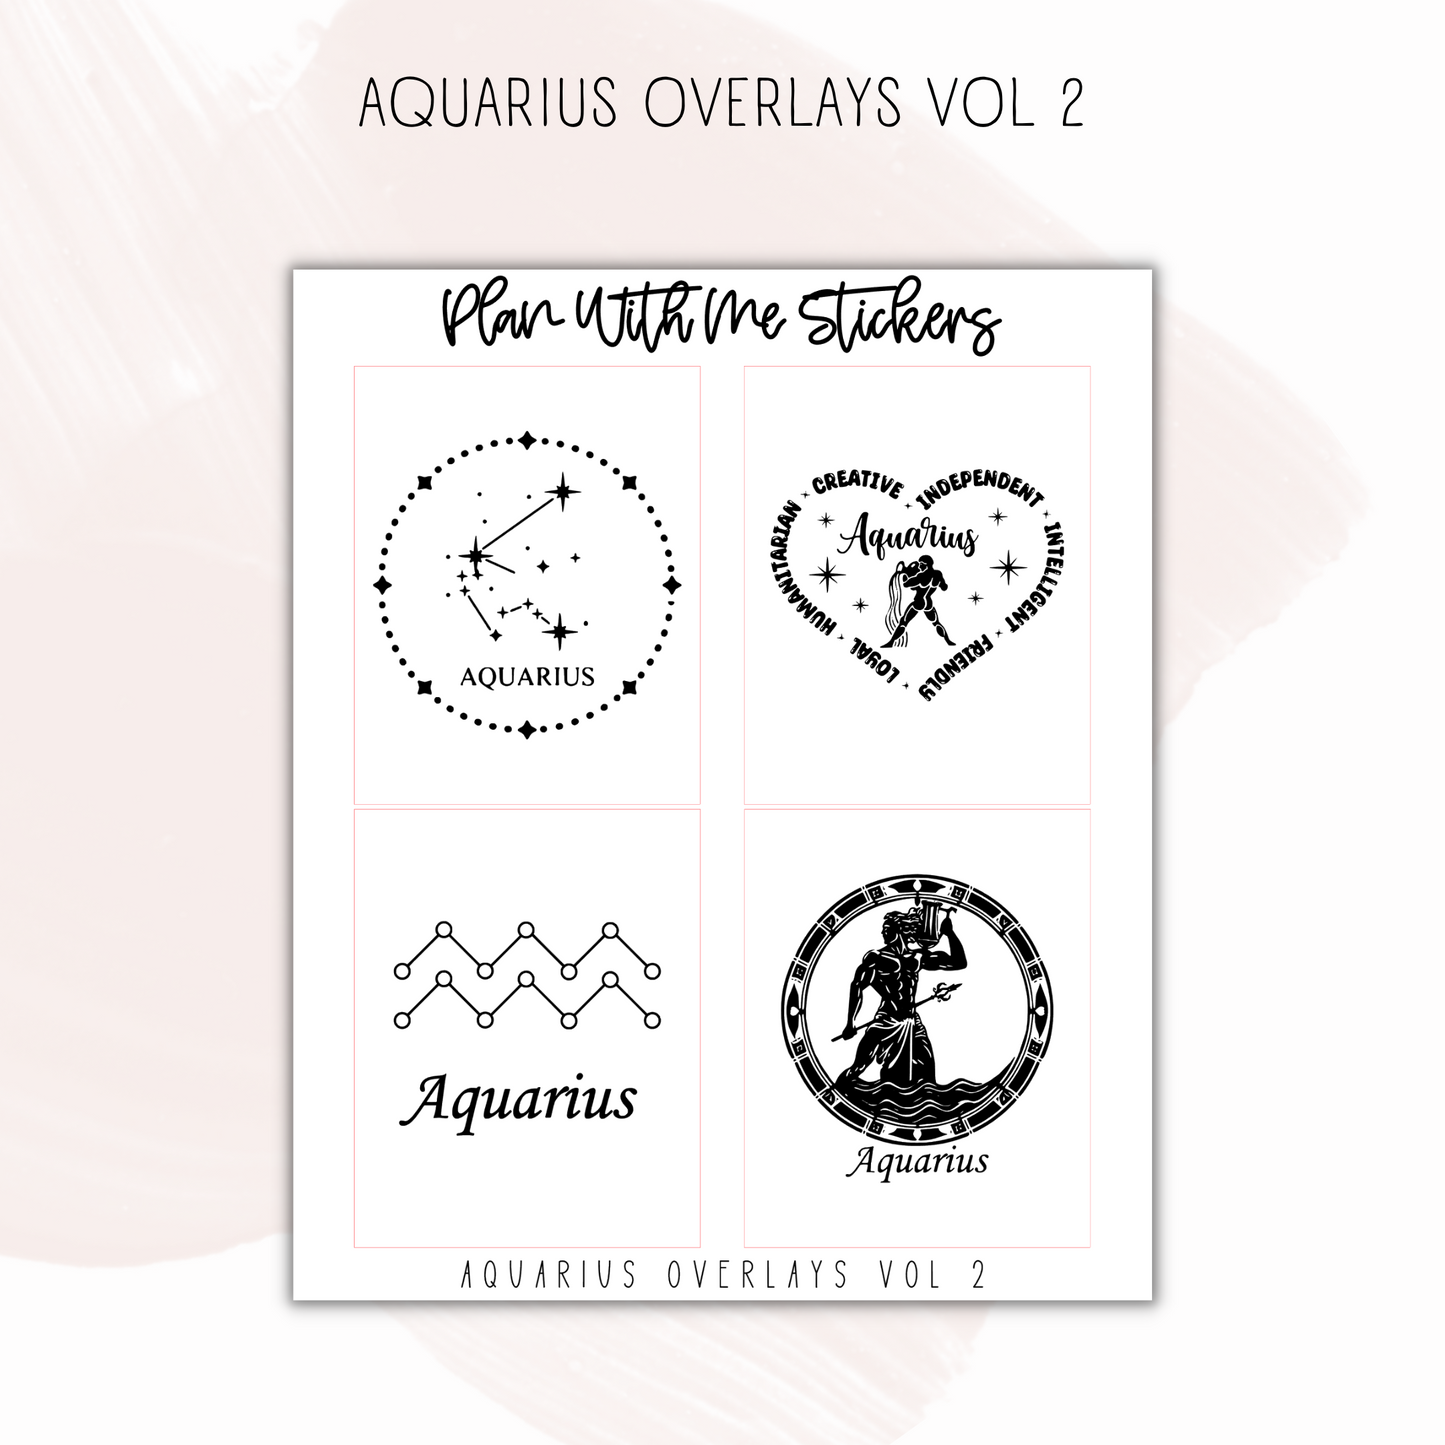 Aquarius Overlays Vol 2